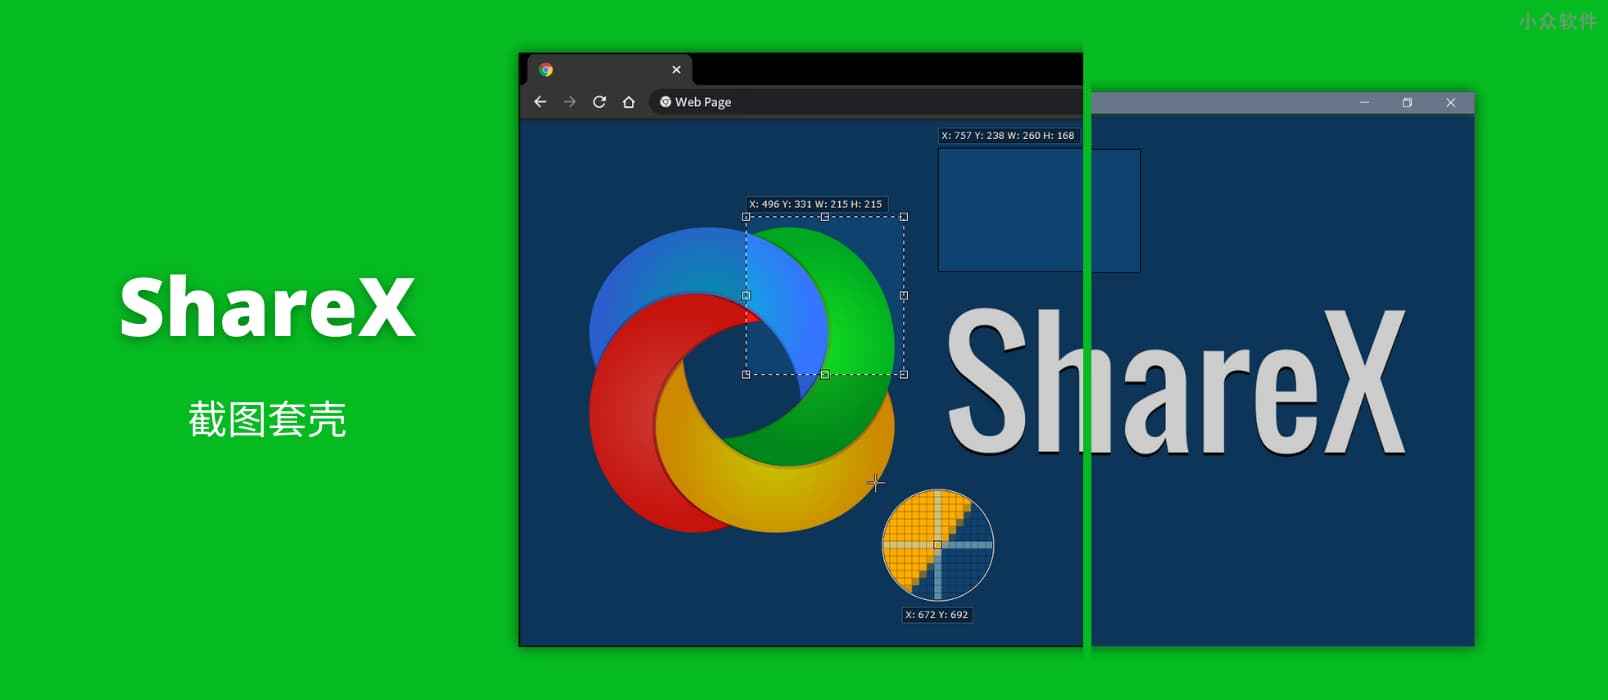 使用 ShareX Image effects 为截图添加 Windows、Chrome 等 32 种外壳，让截图更漂亮、更专业